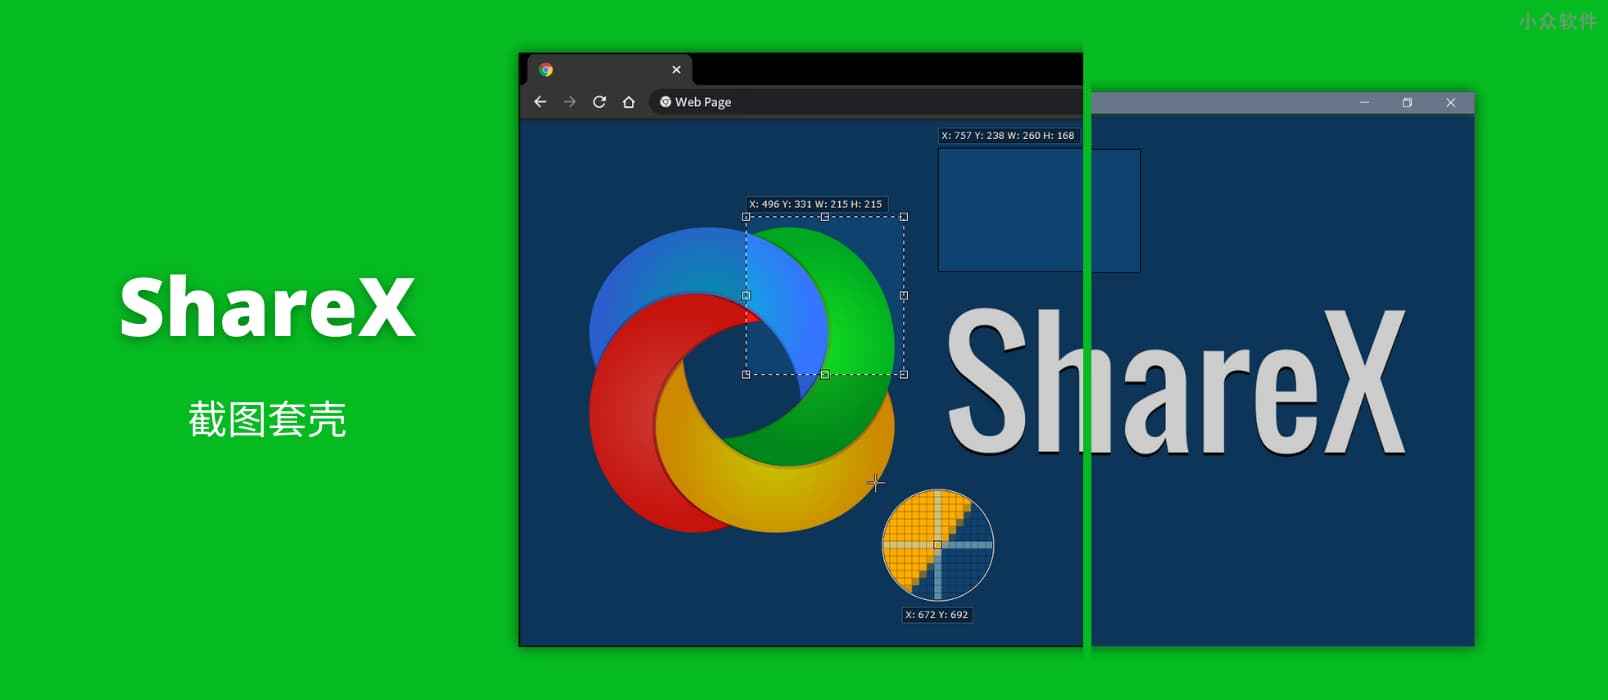 使用 ShareX Image effects 为截图添加 Windows、Chrome 等 32 种外壳，让截图更漂亮、更专业